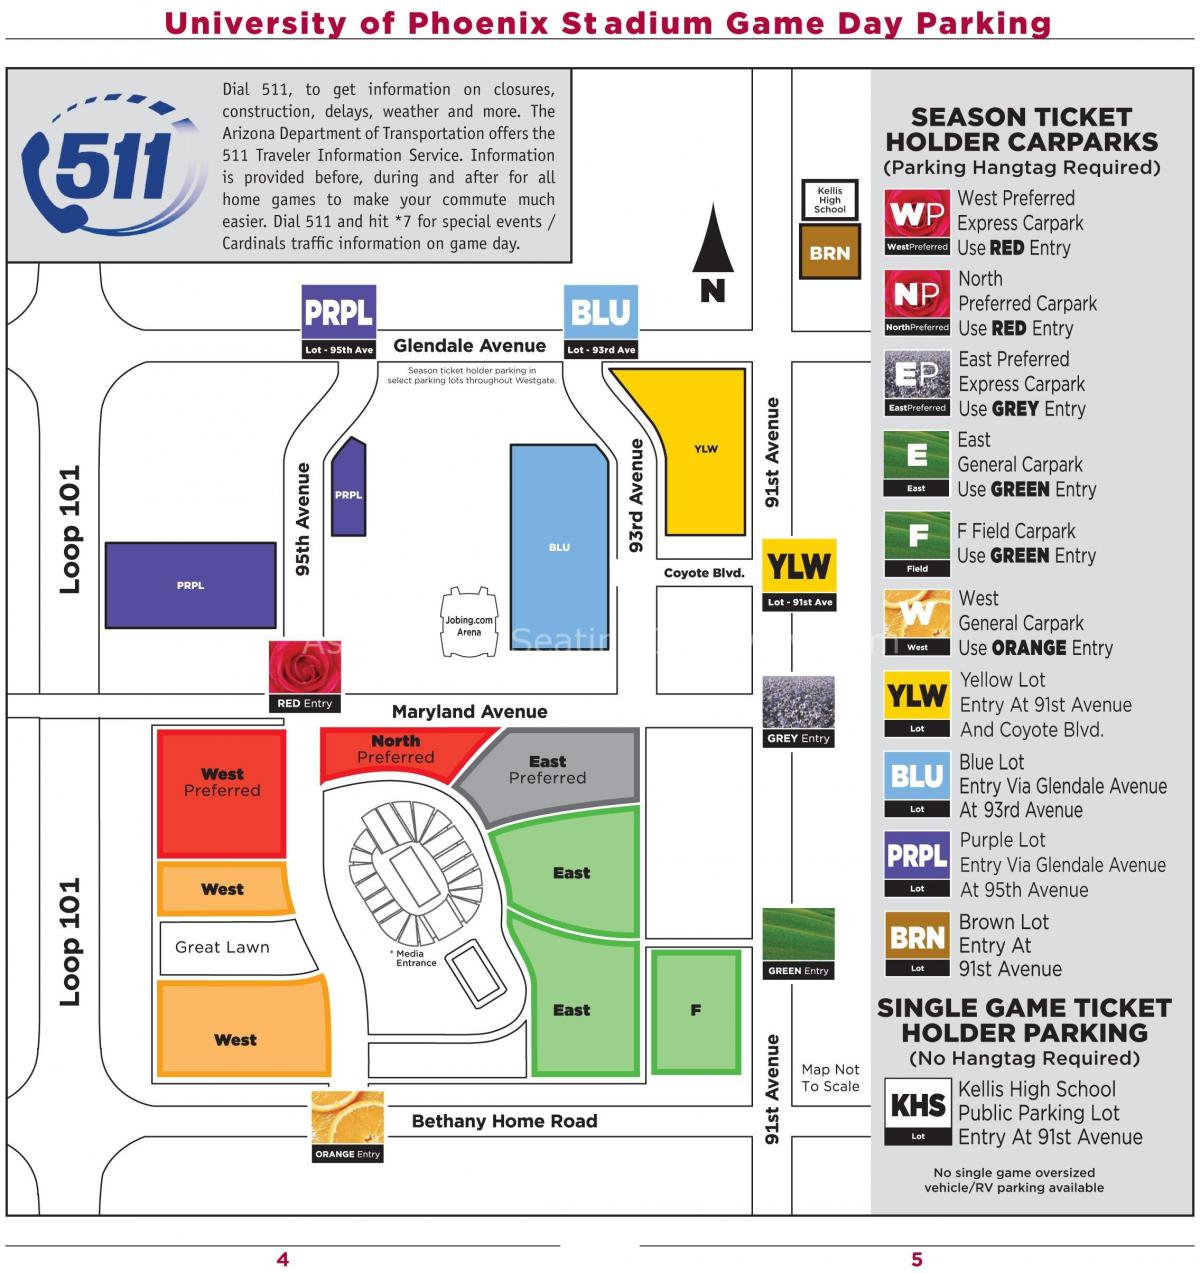 mapa do parque estádio da universidade de Phoenix